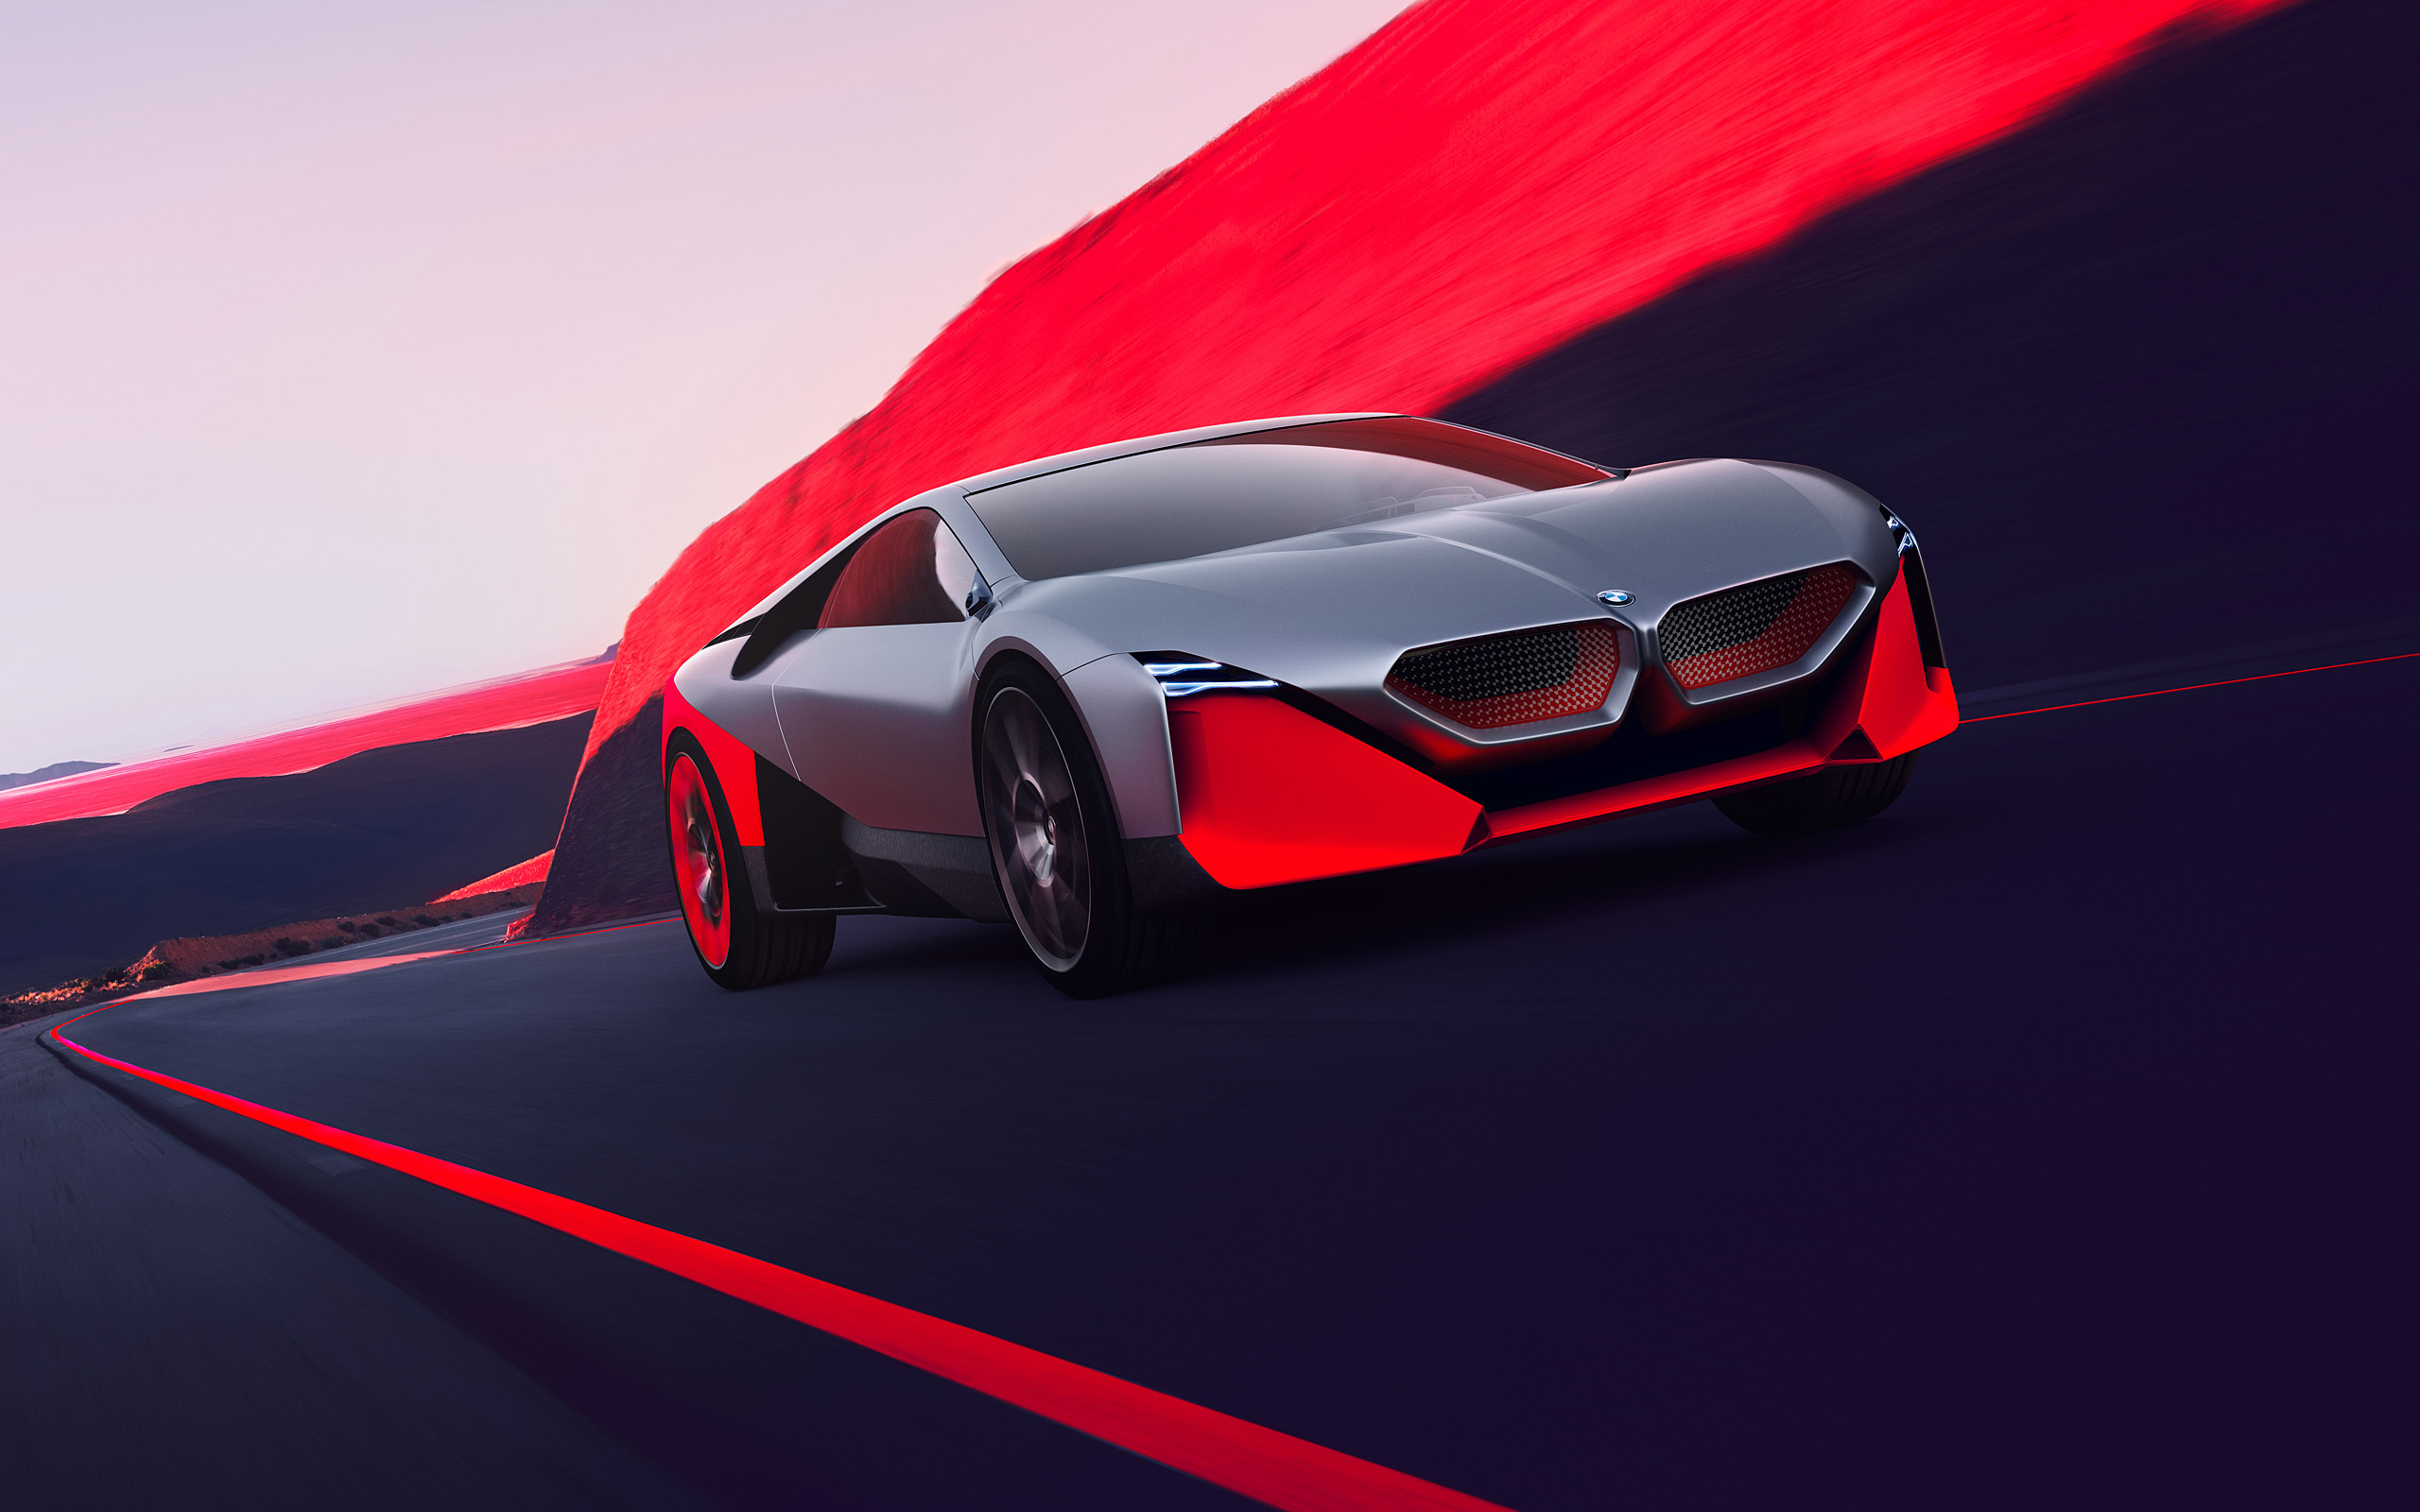  2019 BMW Vision M Next Concept Wallpaper.